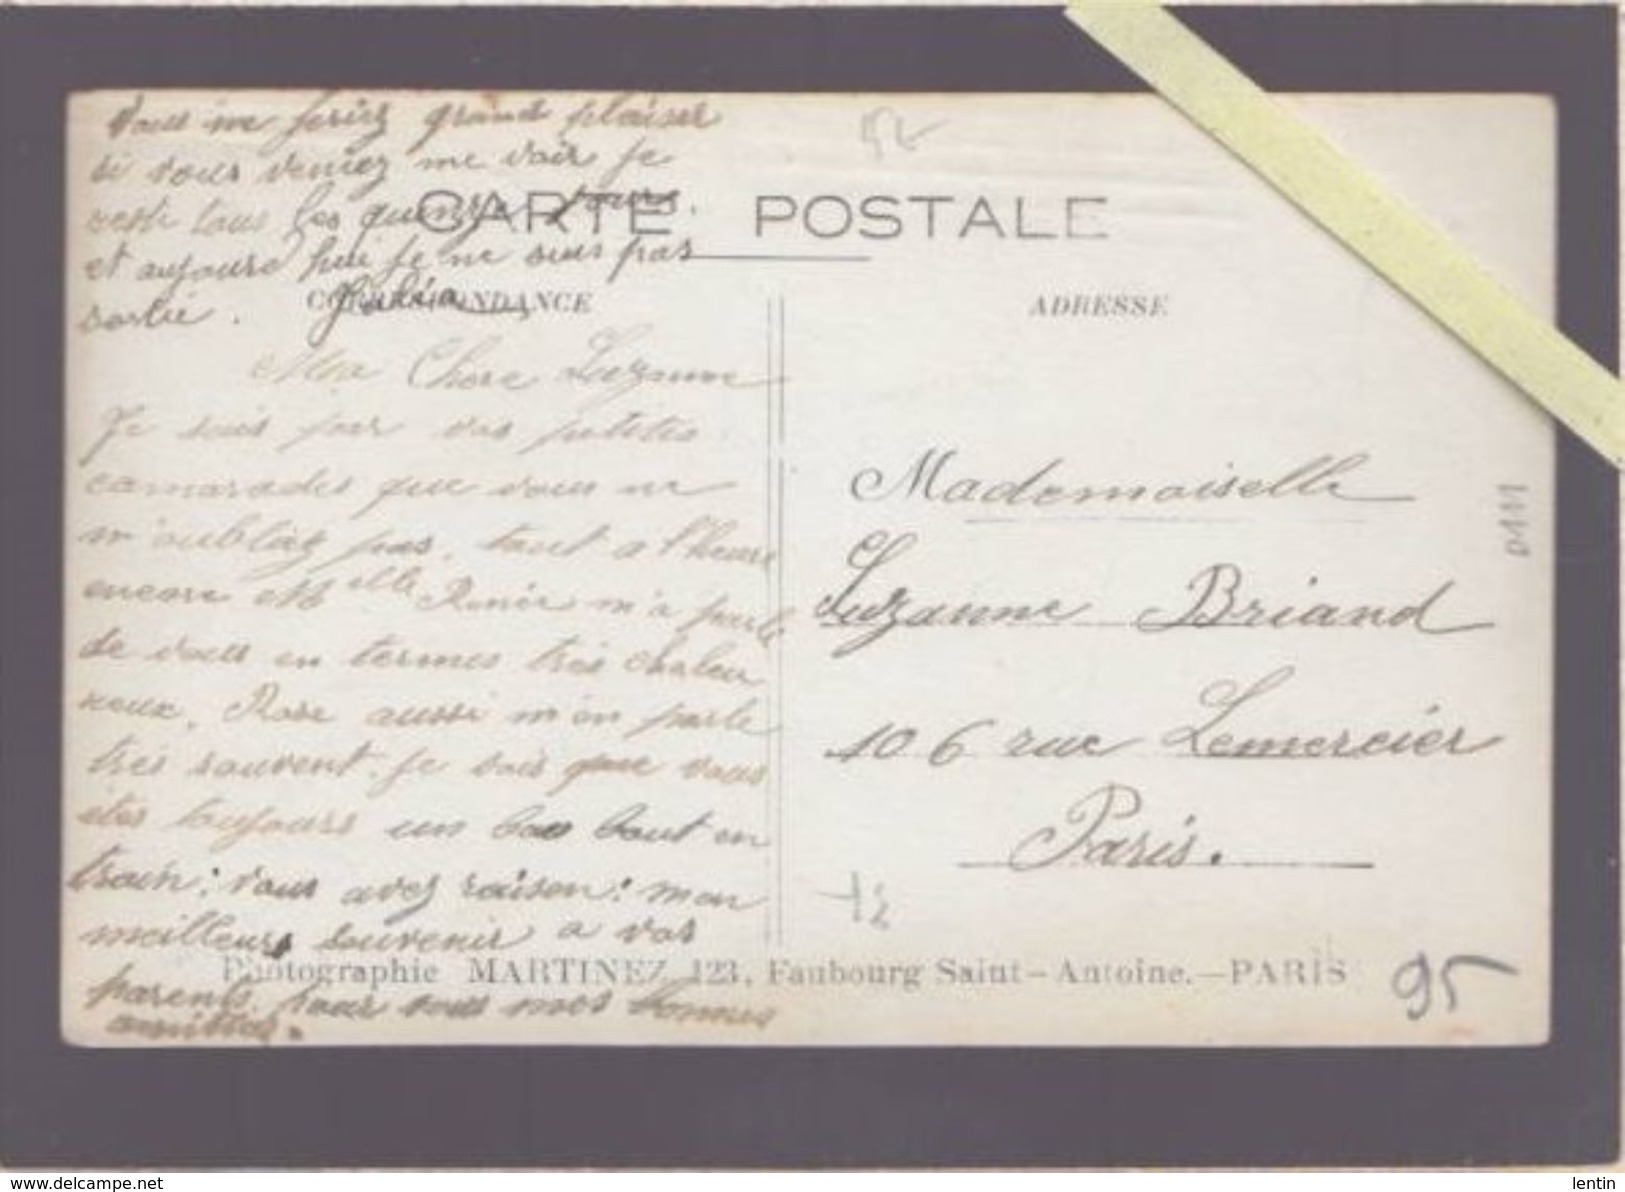 Photographe Martinez De Paris - Légende Manuscrite D'époque :  "Photo Prise Au Bord Du Lac D'Enghien" Datée 11 Sep 1911 - Enghien Les Bains